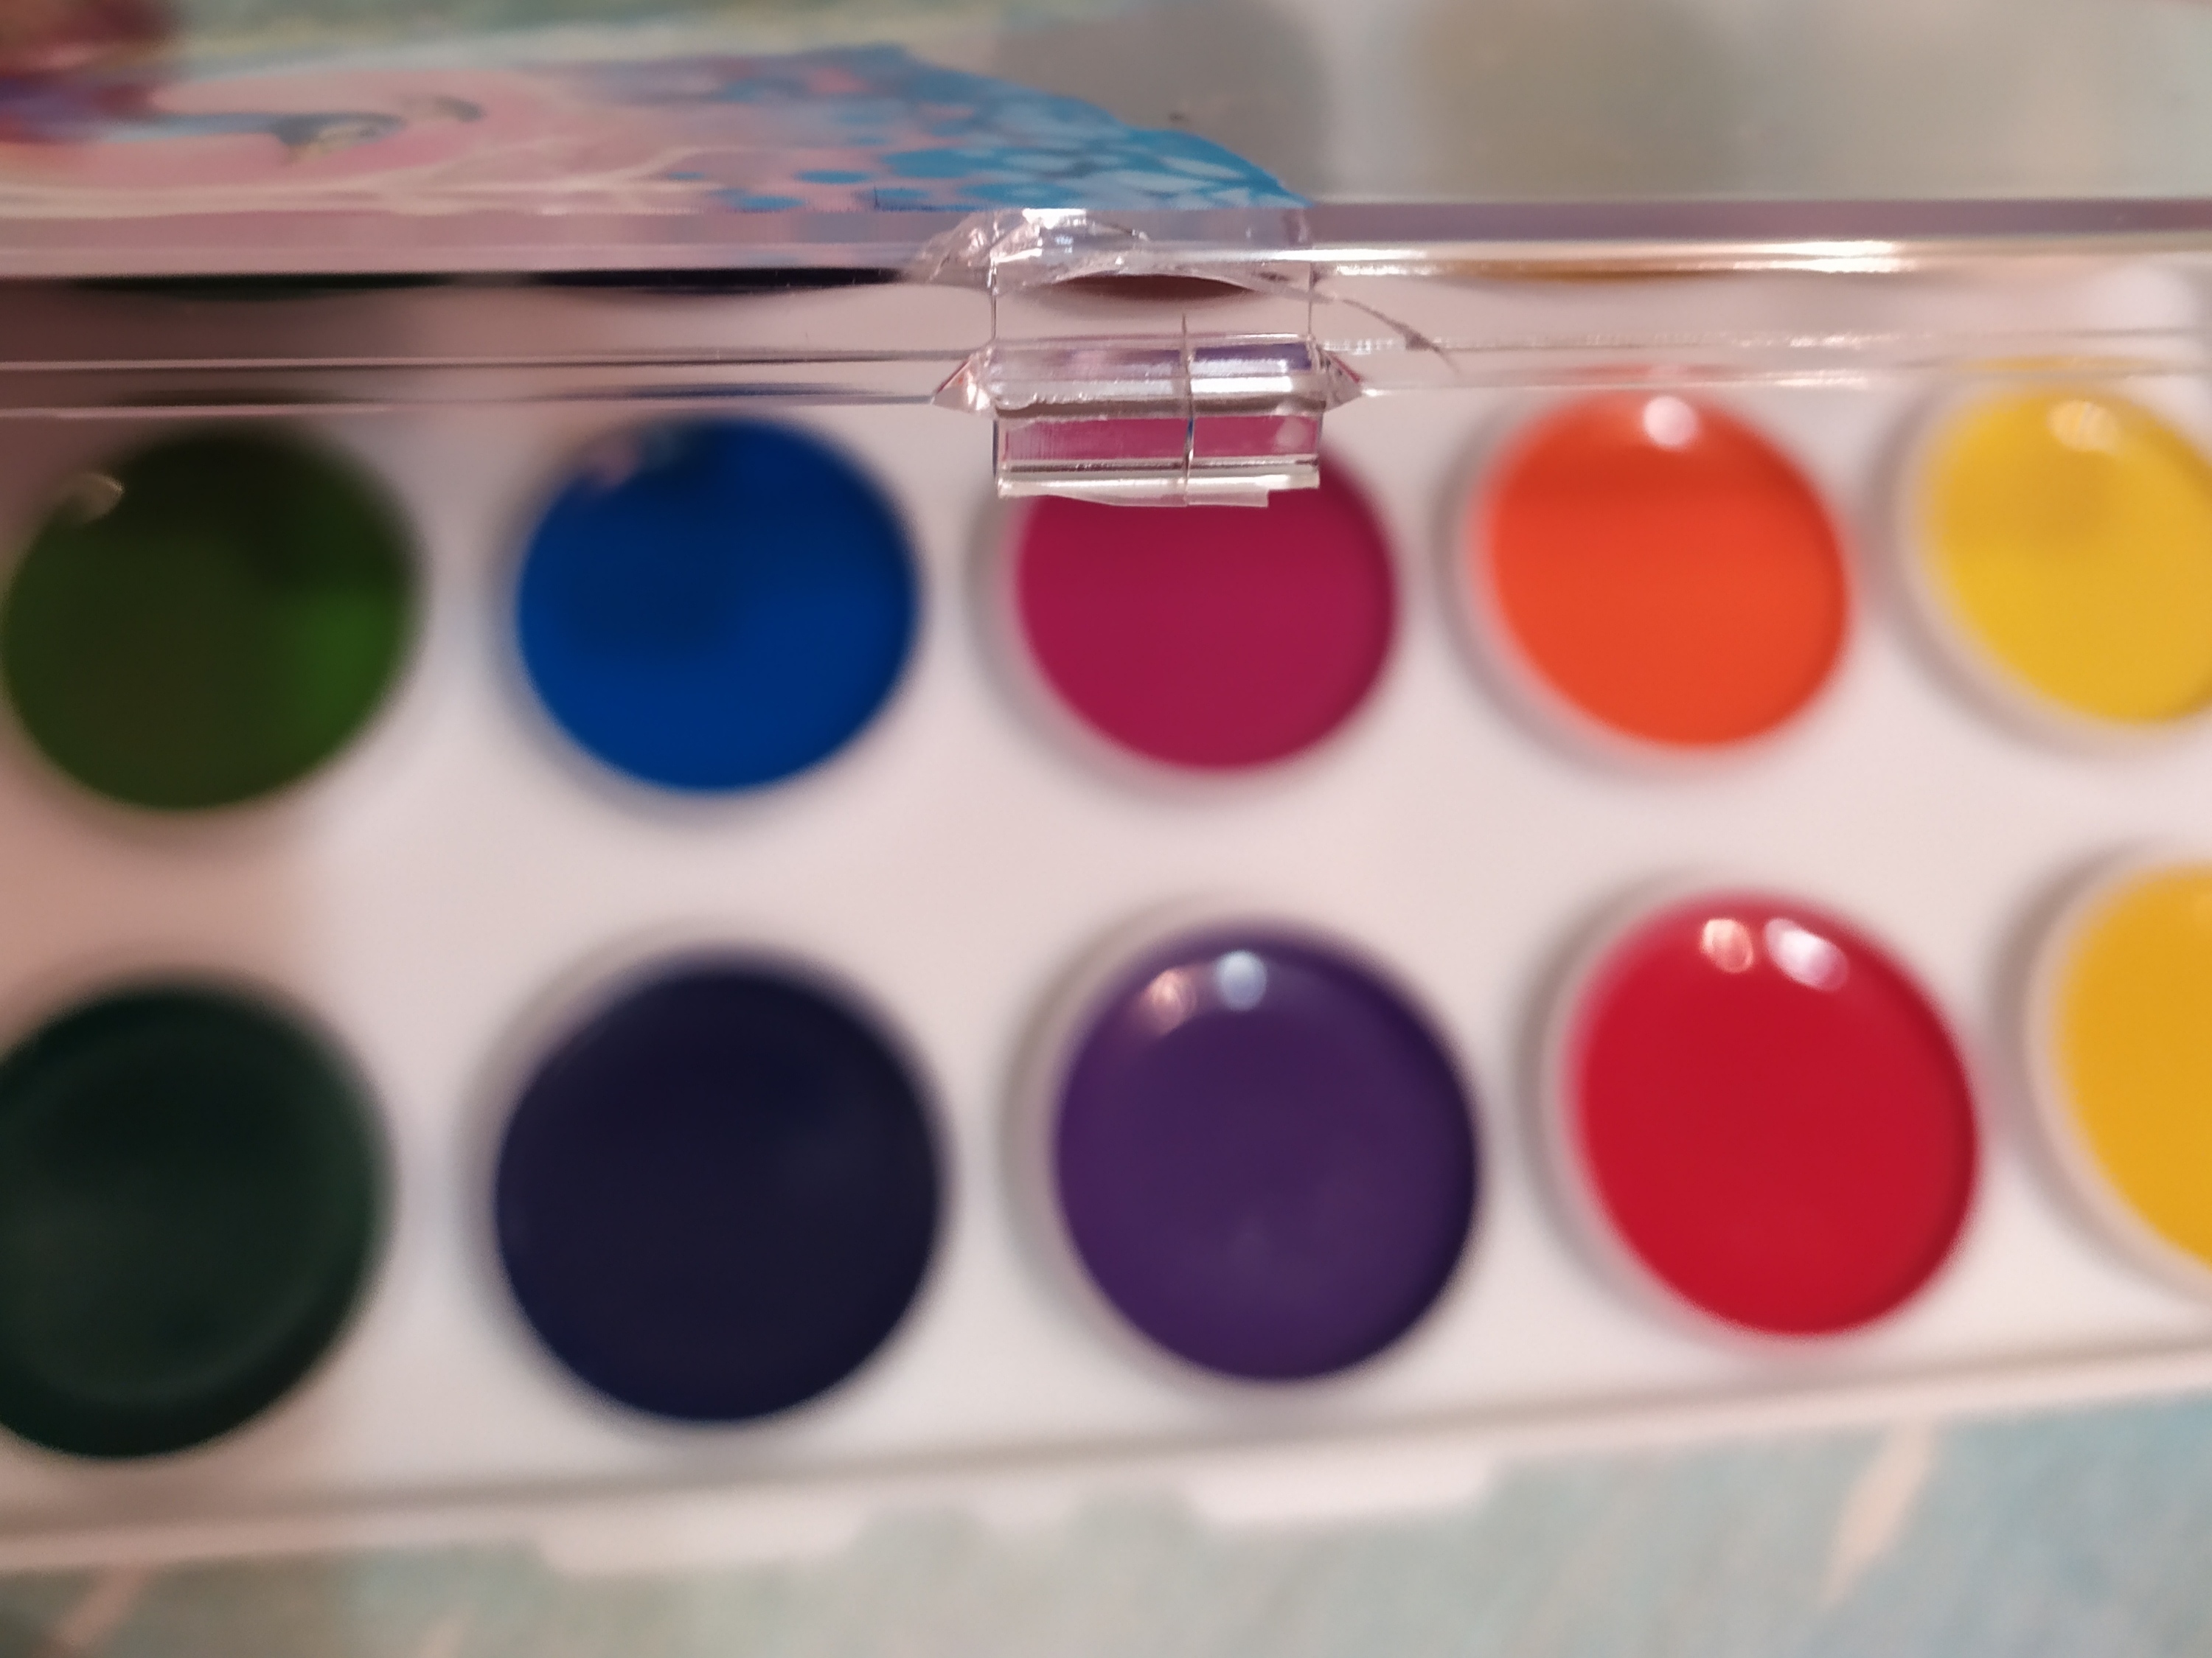 Фотография покупателя товара Акварель 18 цветов ErichKrause ArtBerry, с УФ-защитой, пластик, европодвес, без кисти